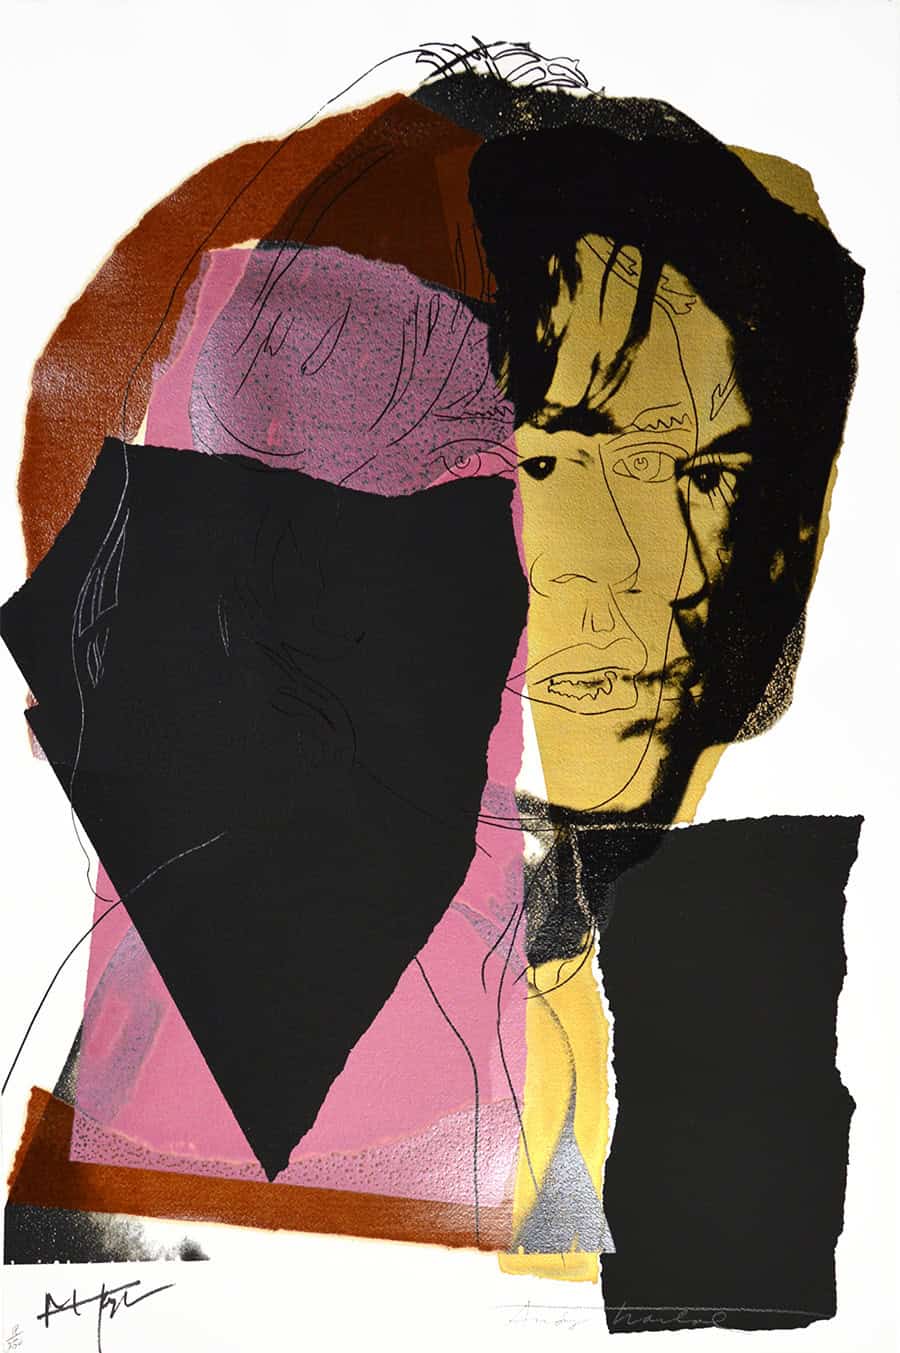 Andy Warhol Mick Jagger, 1975